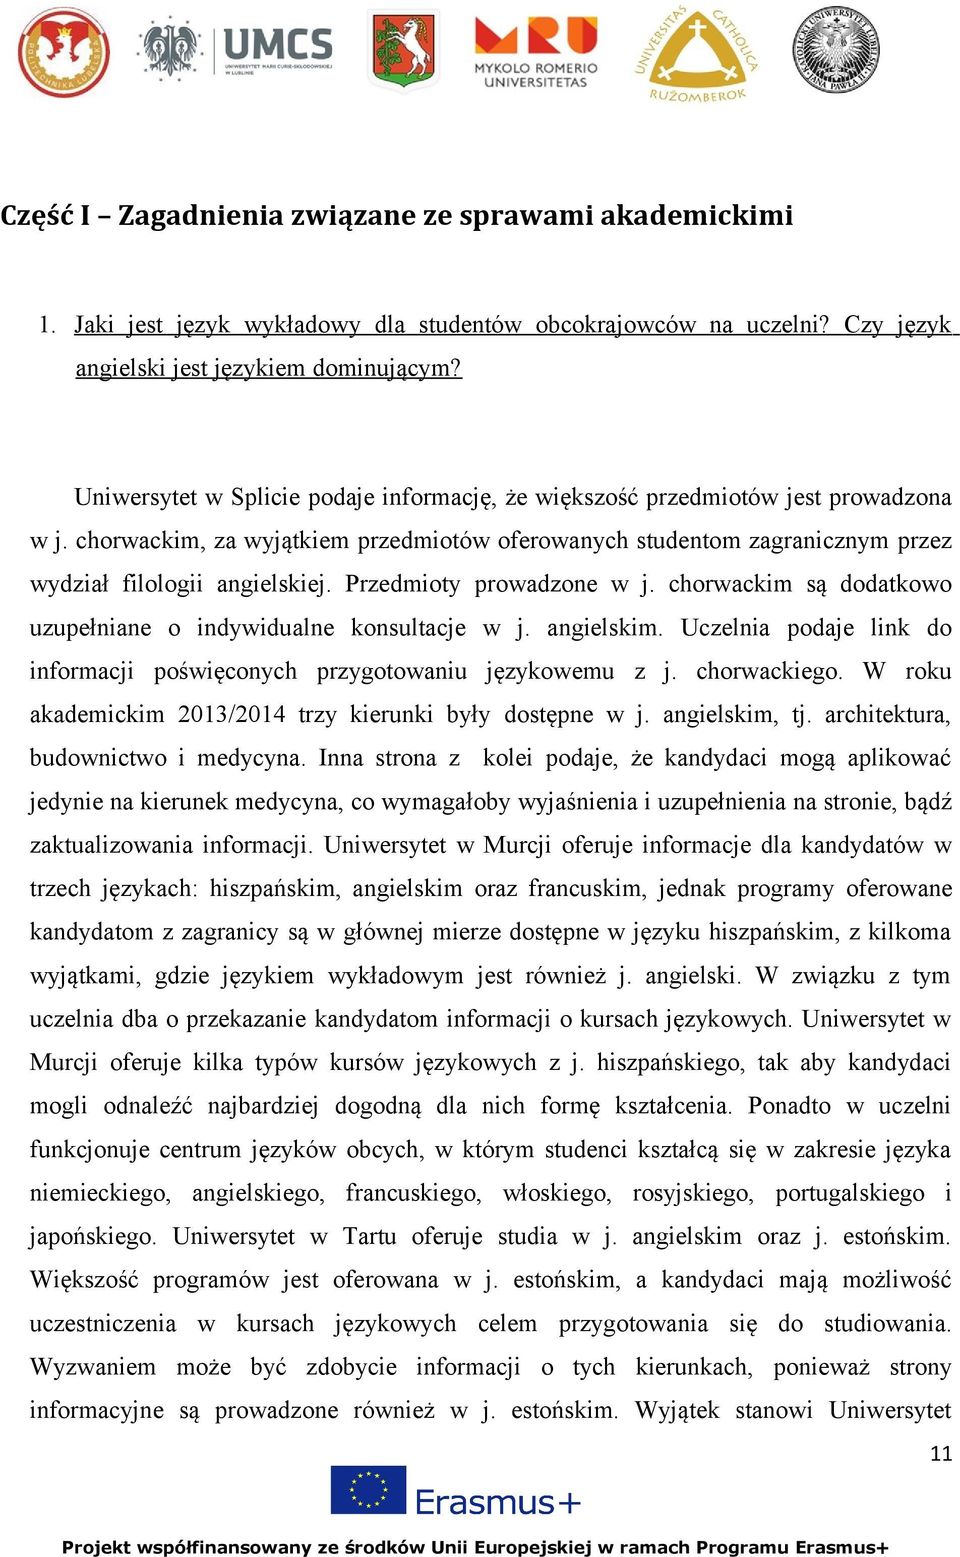 Przedmioty prowadzone w j. chorwackim są dodatkowo uzupełniane o indywidualne konsultacje w j. angielskim. Uczelnia podaje link do informacji poświęconych przygotowaniu językowemu z j. chorwackiego.